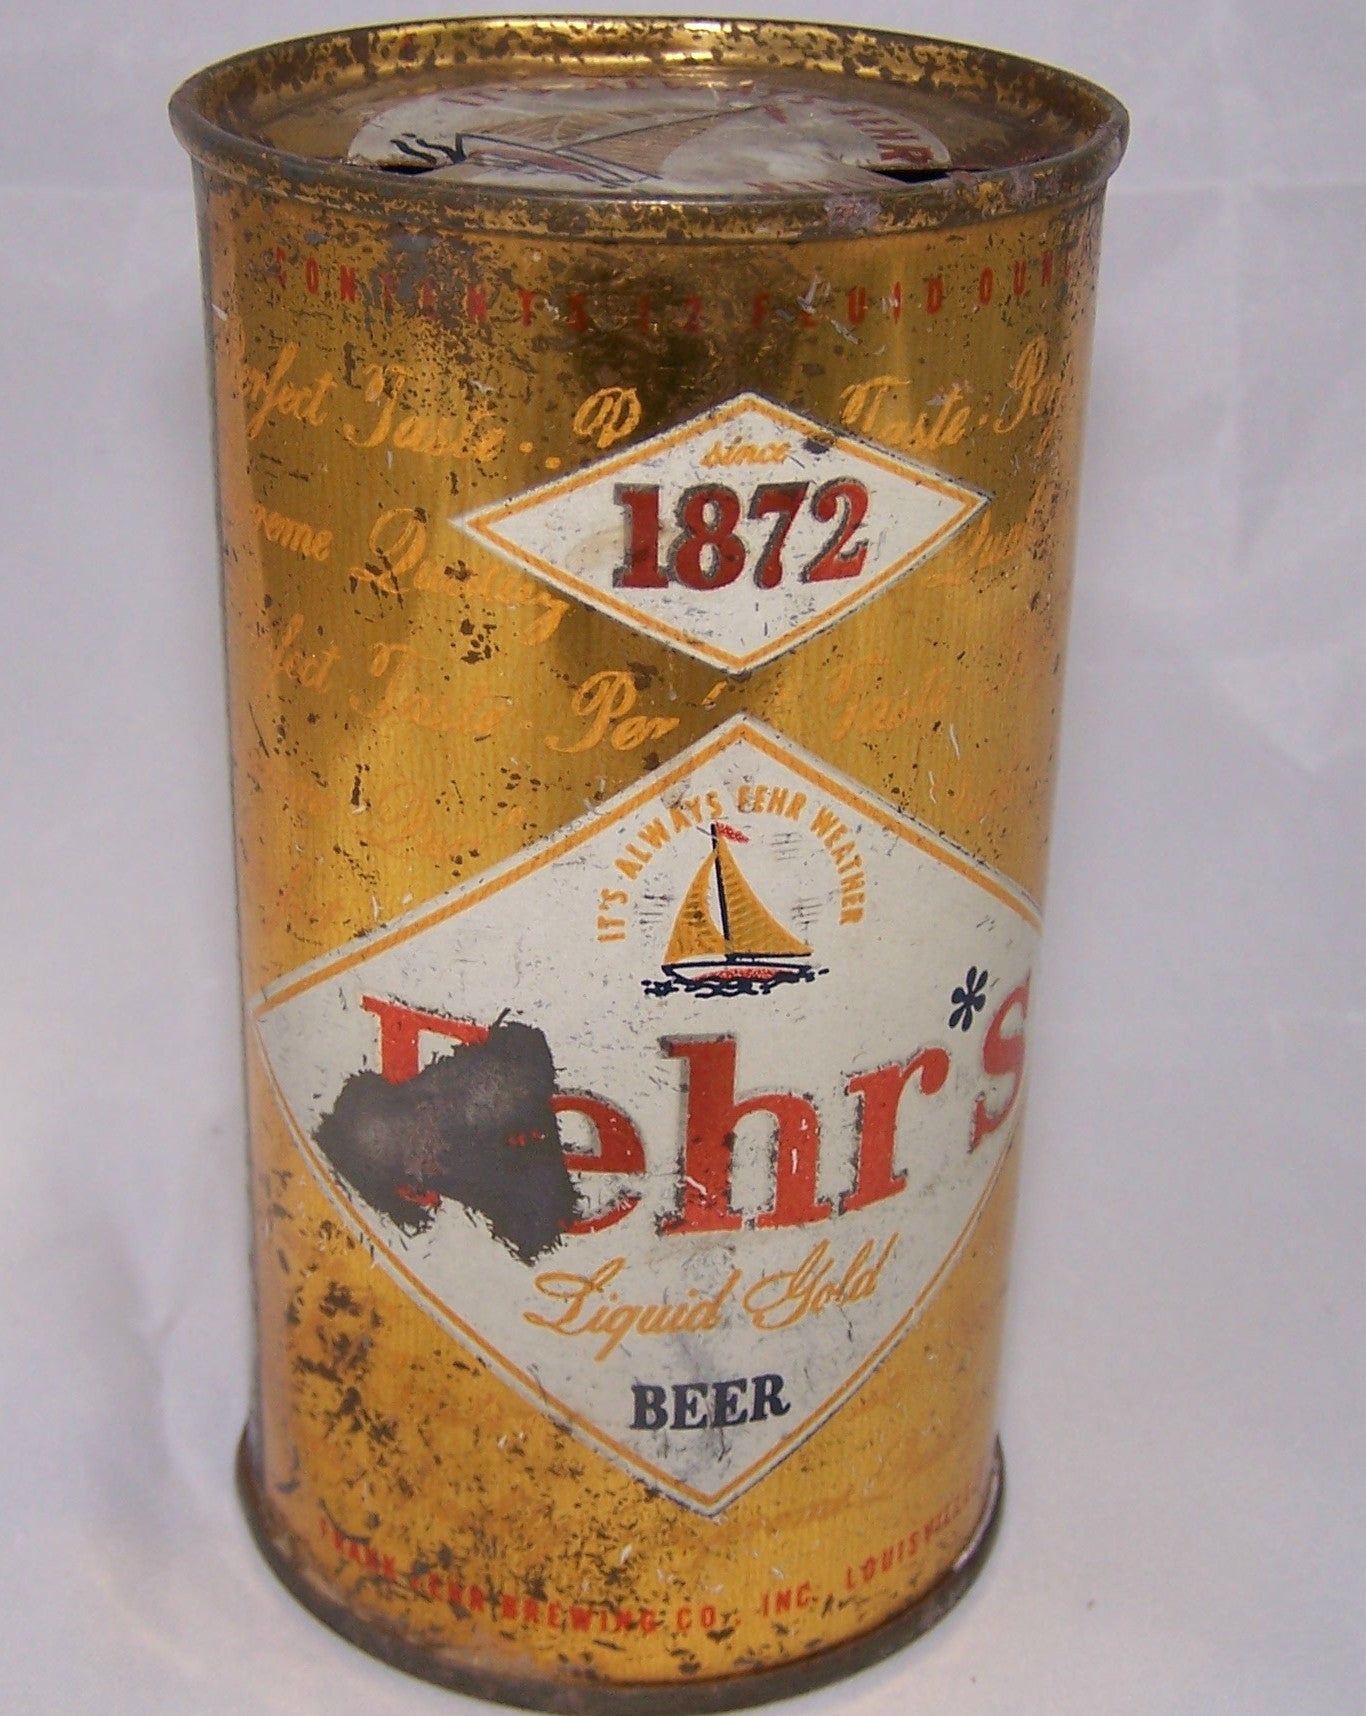 Fehr's Liquid Gold Beer, USBC 62-31, Grade 2  Sold on 8/1/16